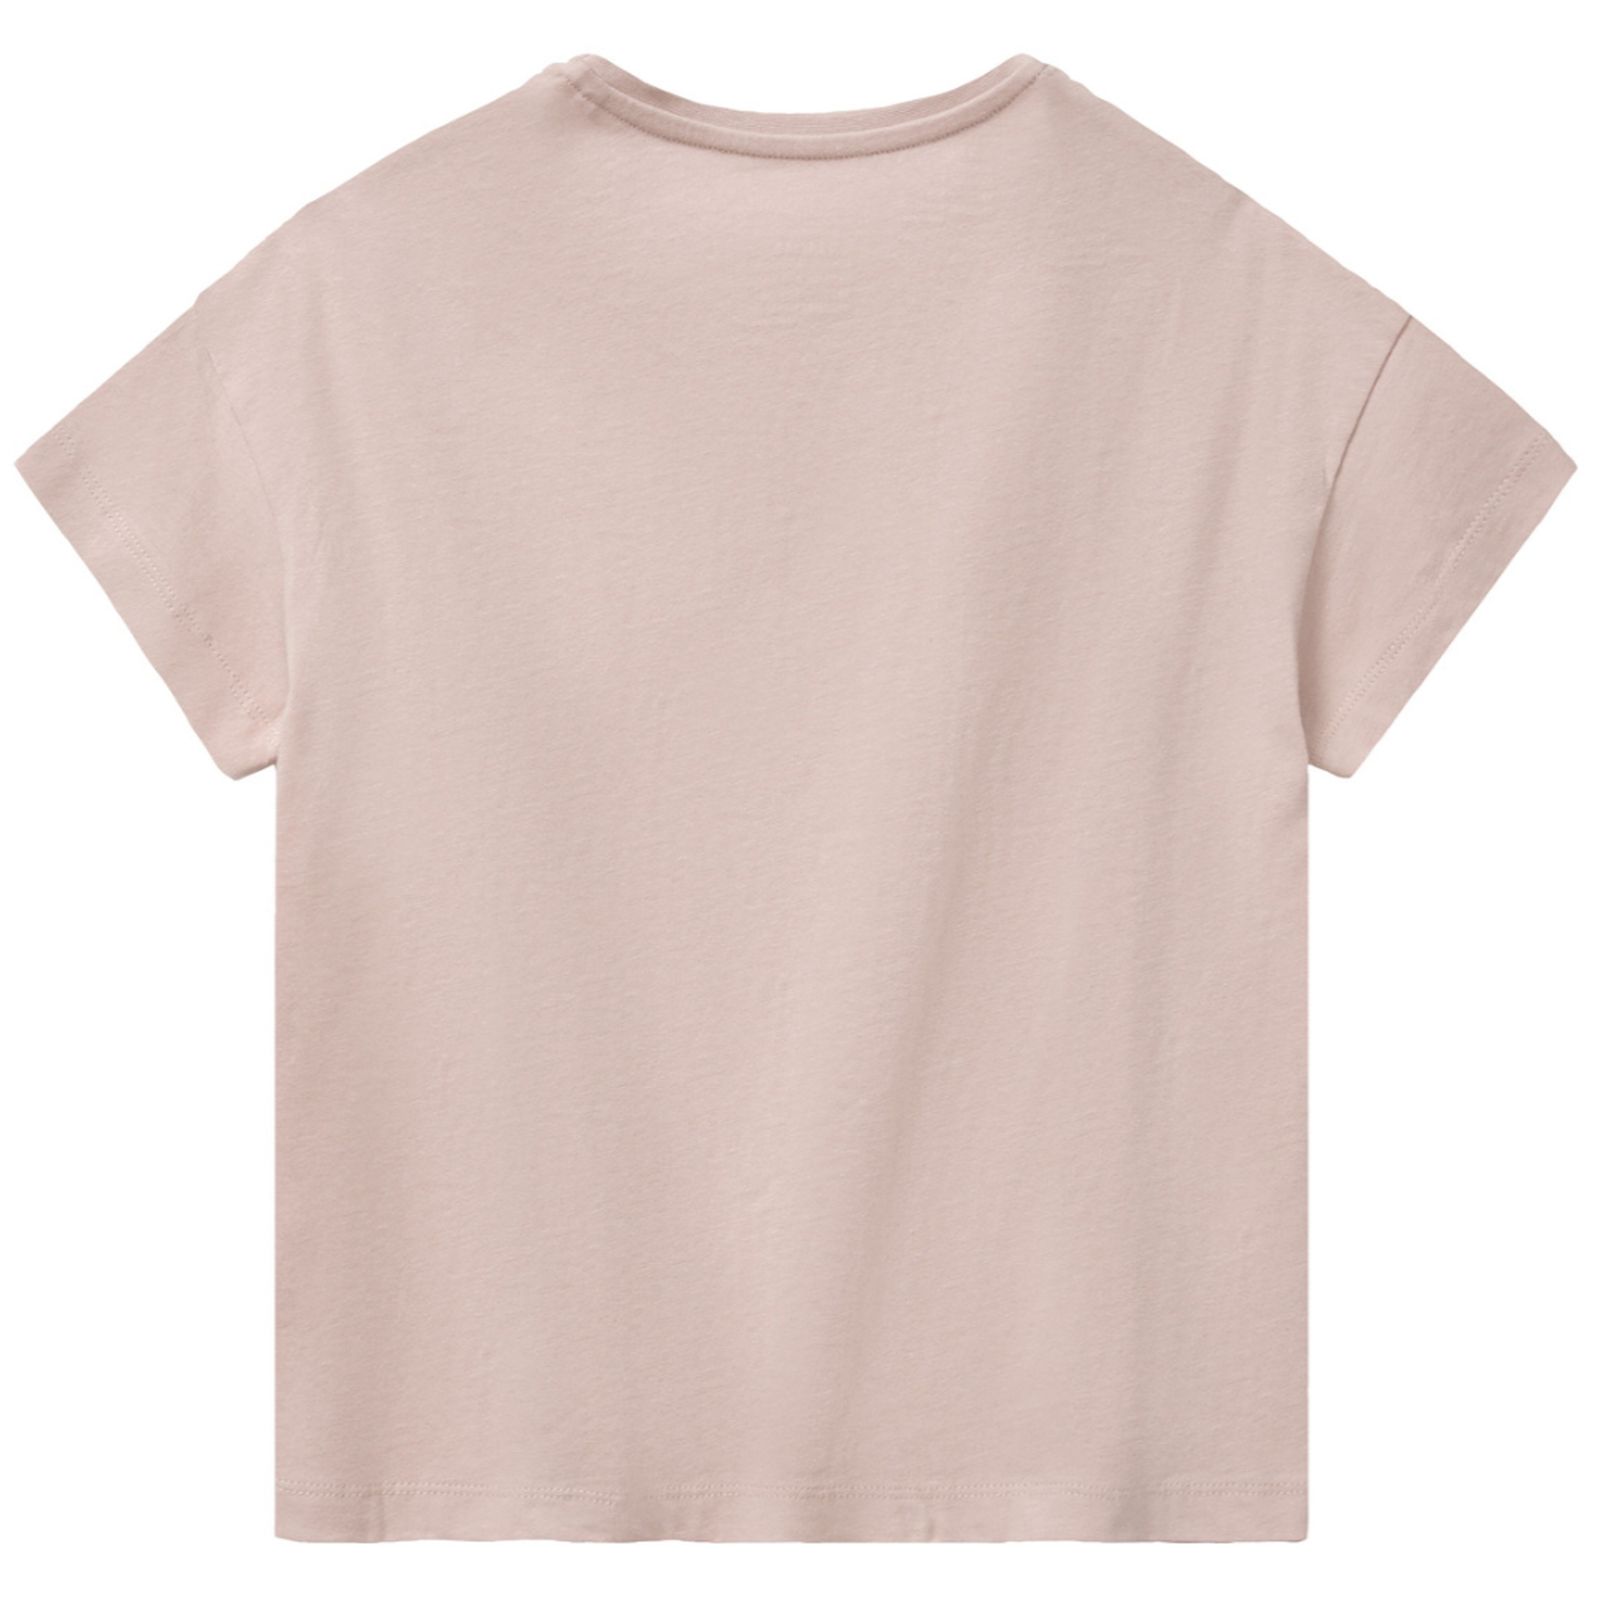 تی شرت آستین کوتاه دخترانه هری پاتر مدل sh مجموعه 2 عددی -  - 5